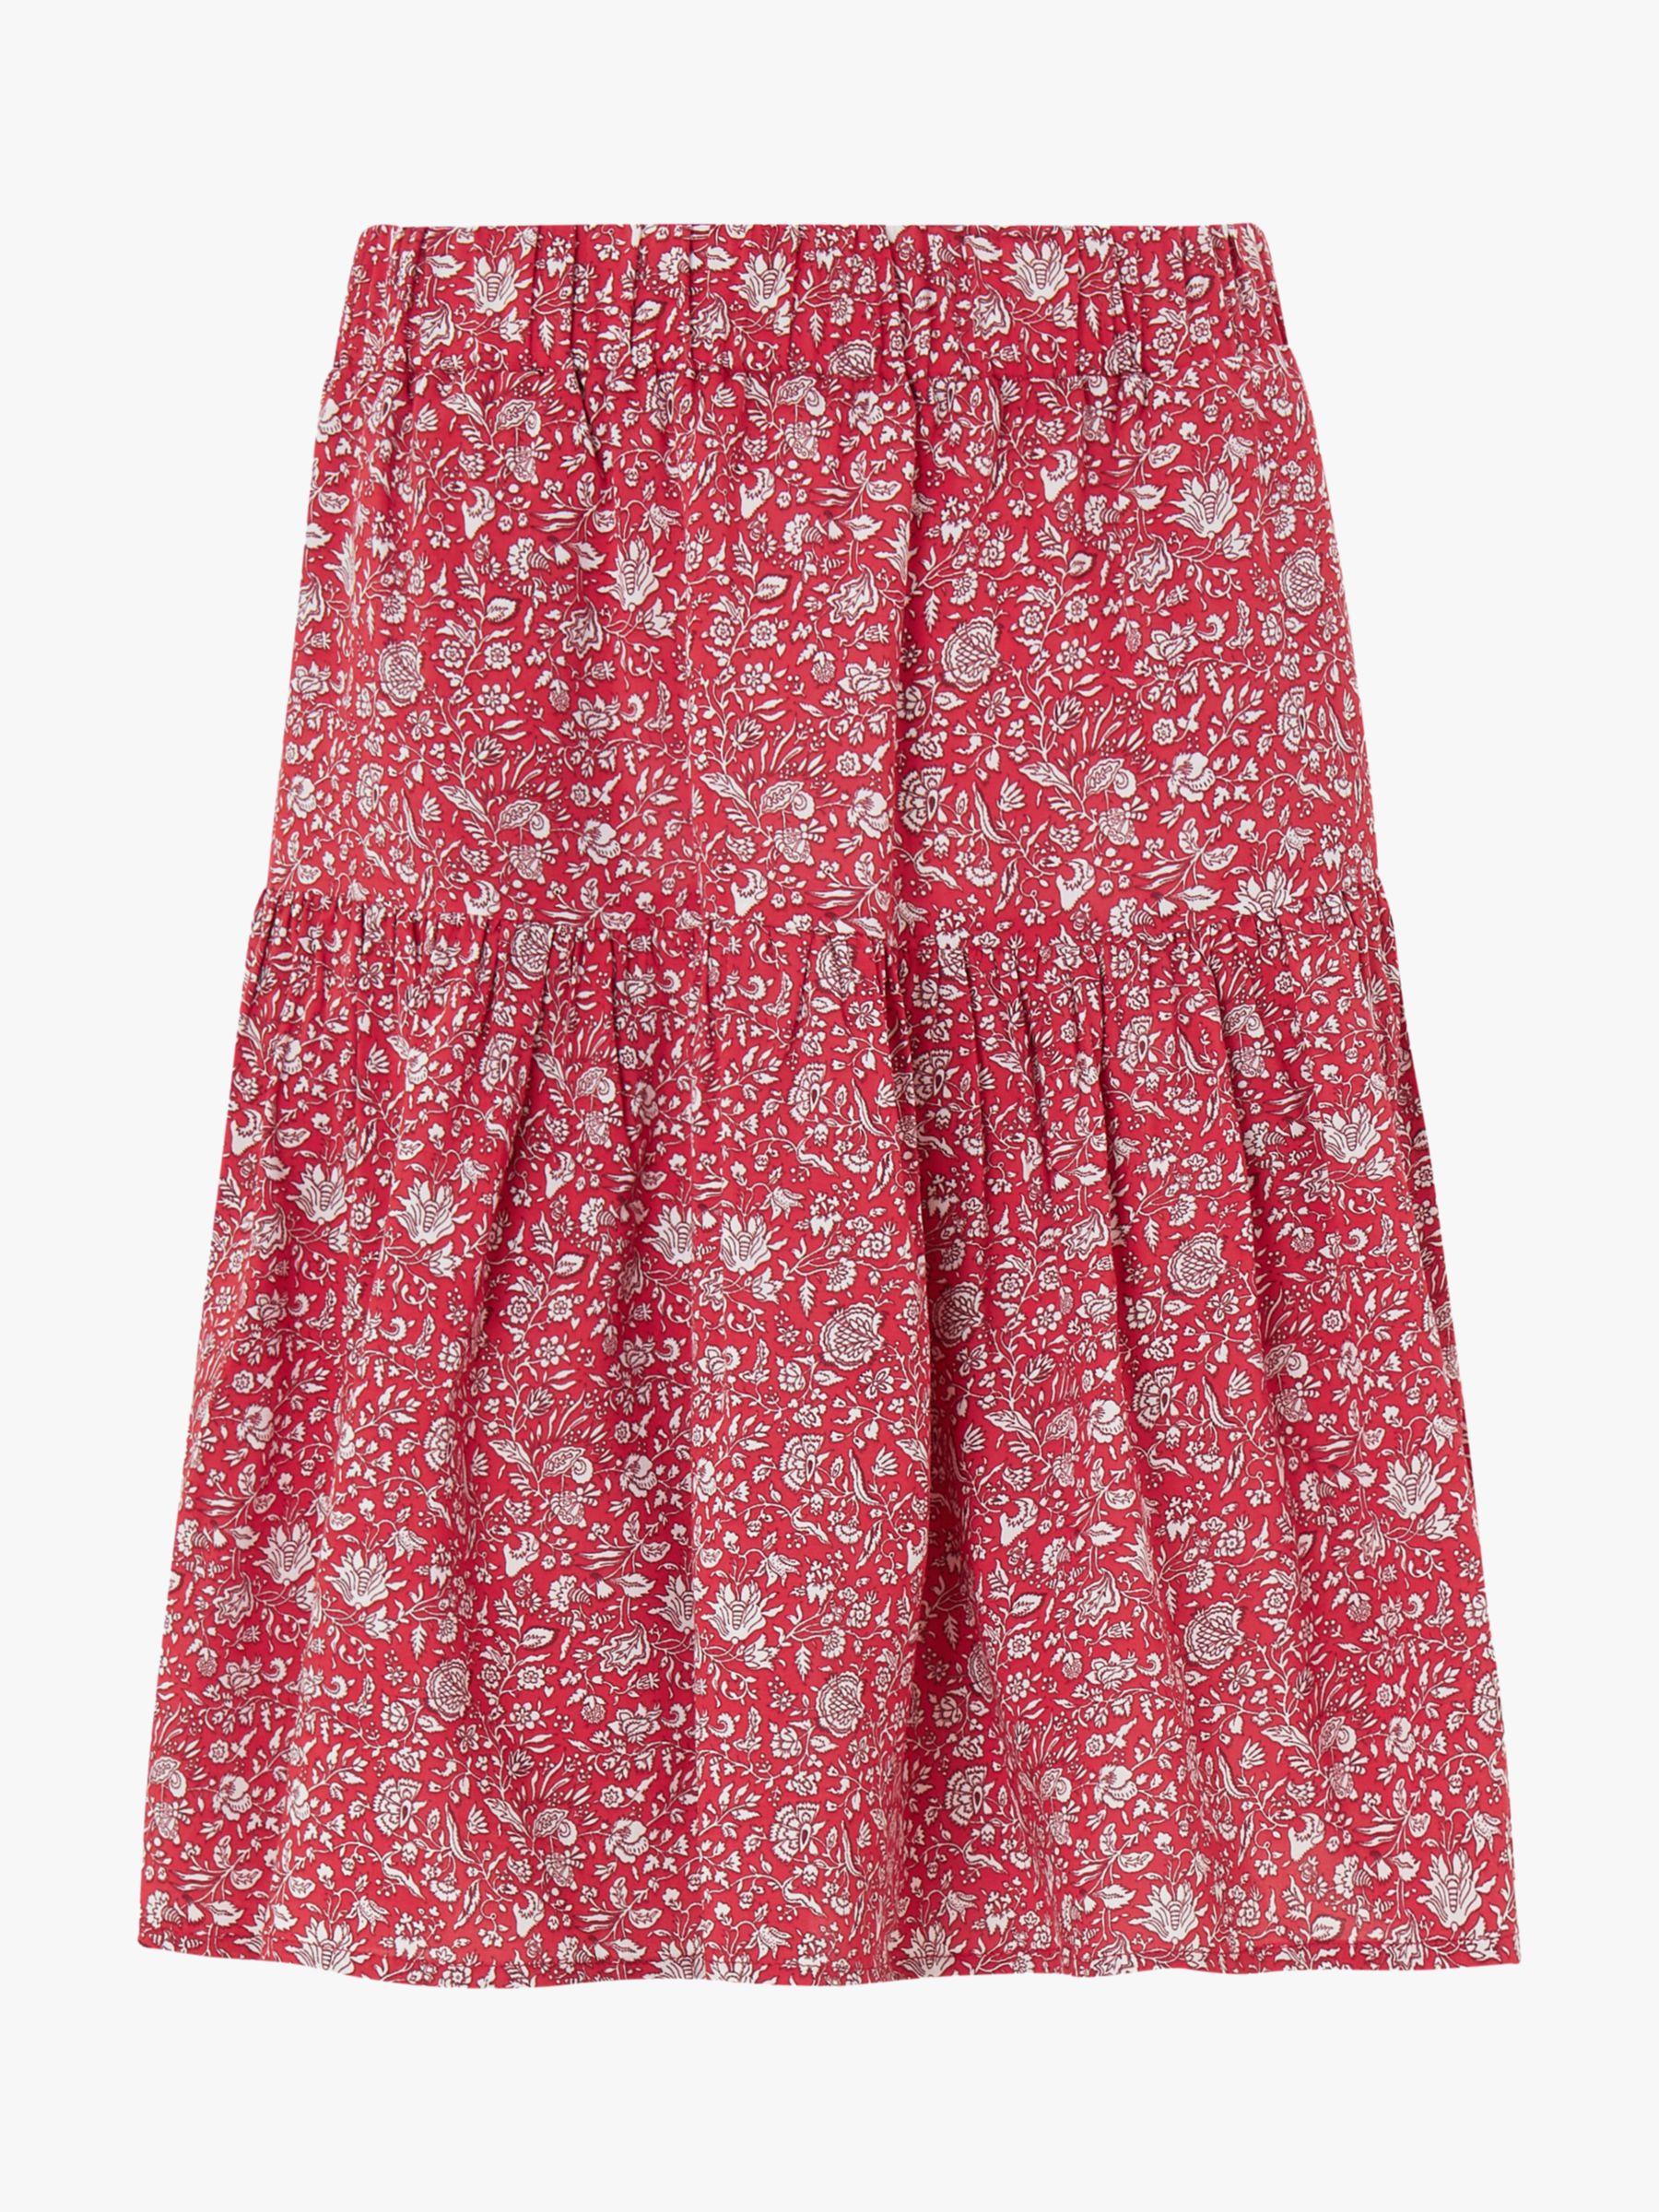 Baukjen Calista Floral Print Skirt, Red/Multi at John Lewis & Partners